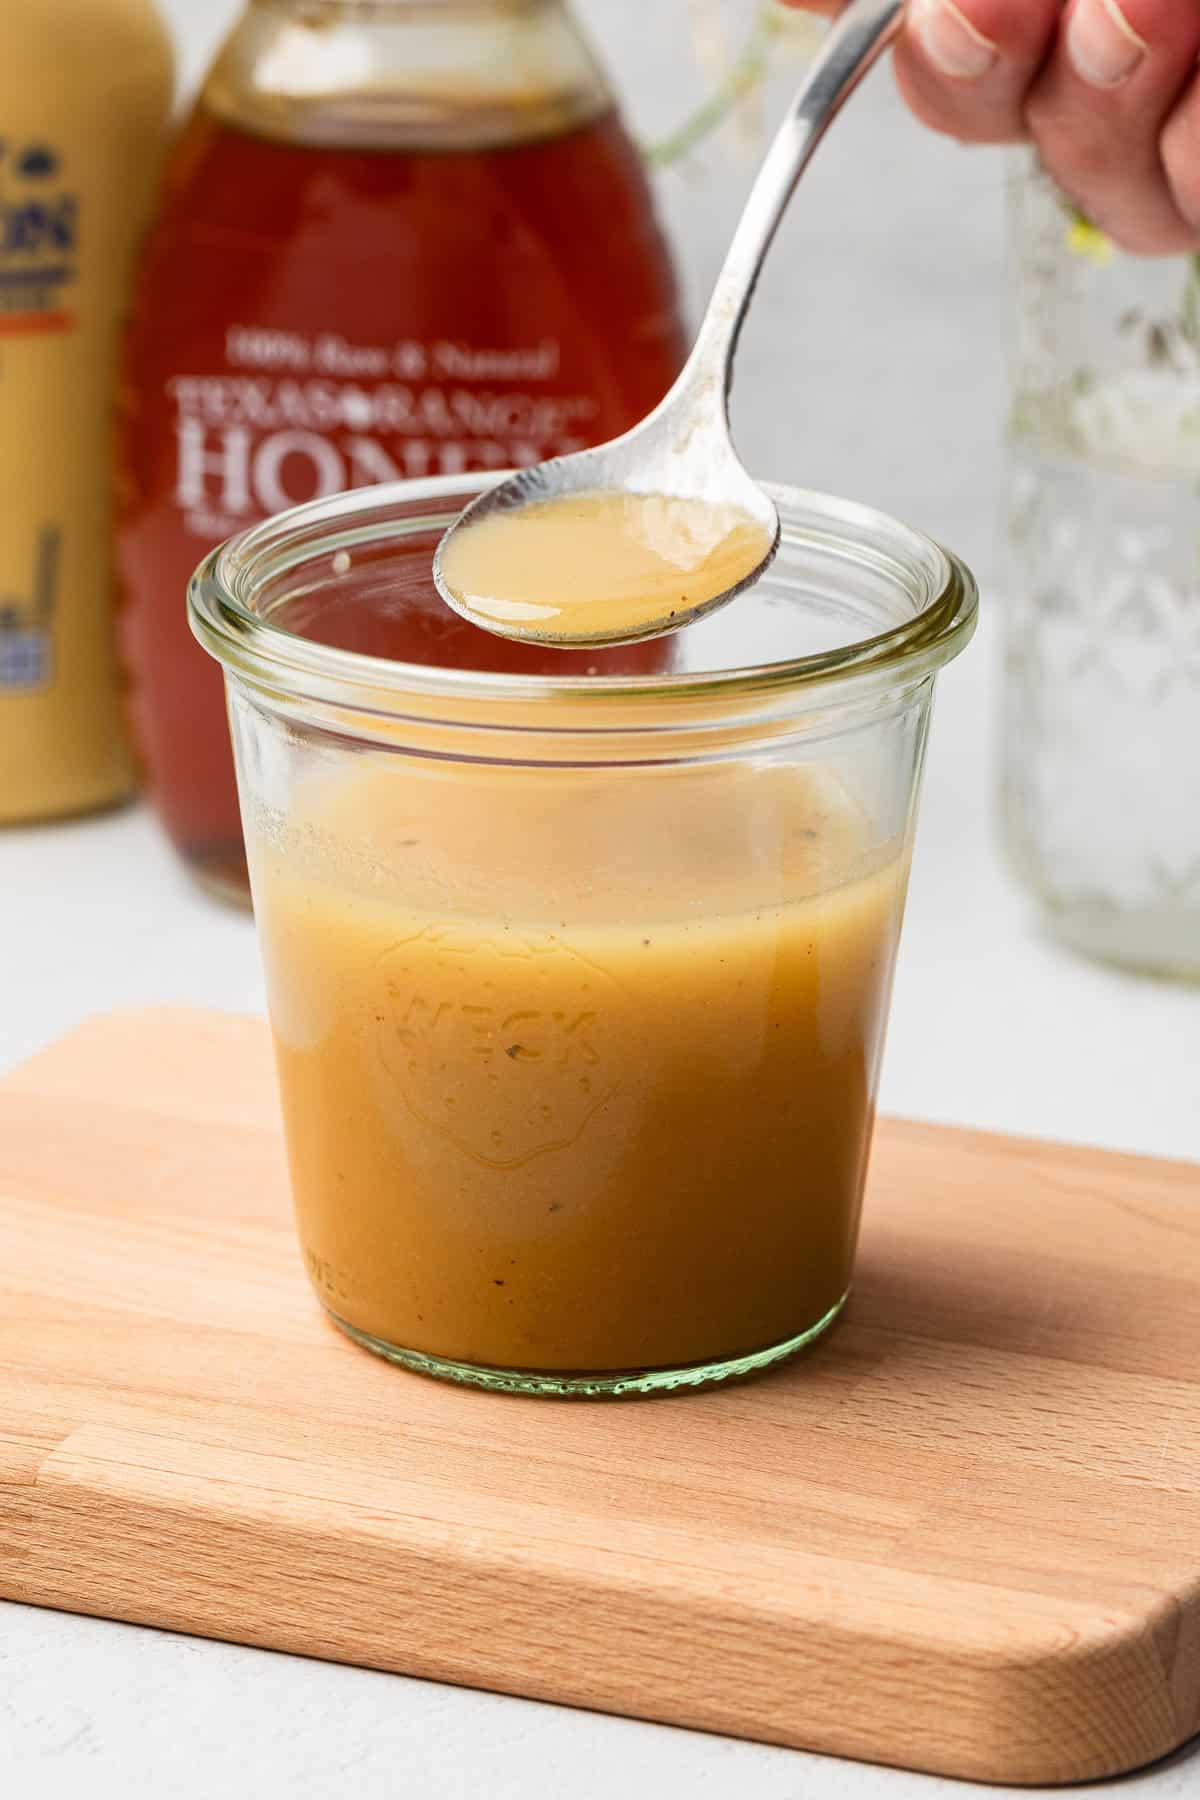 Honey mustard dressing in a jar.